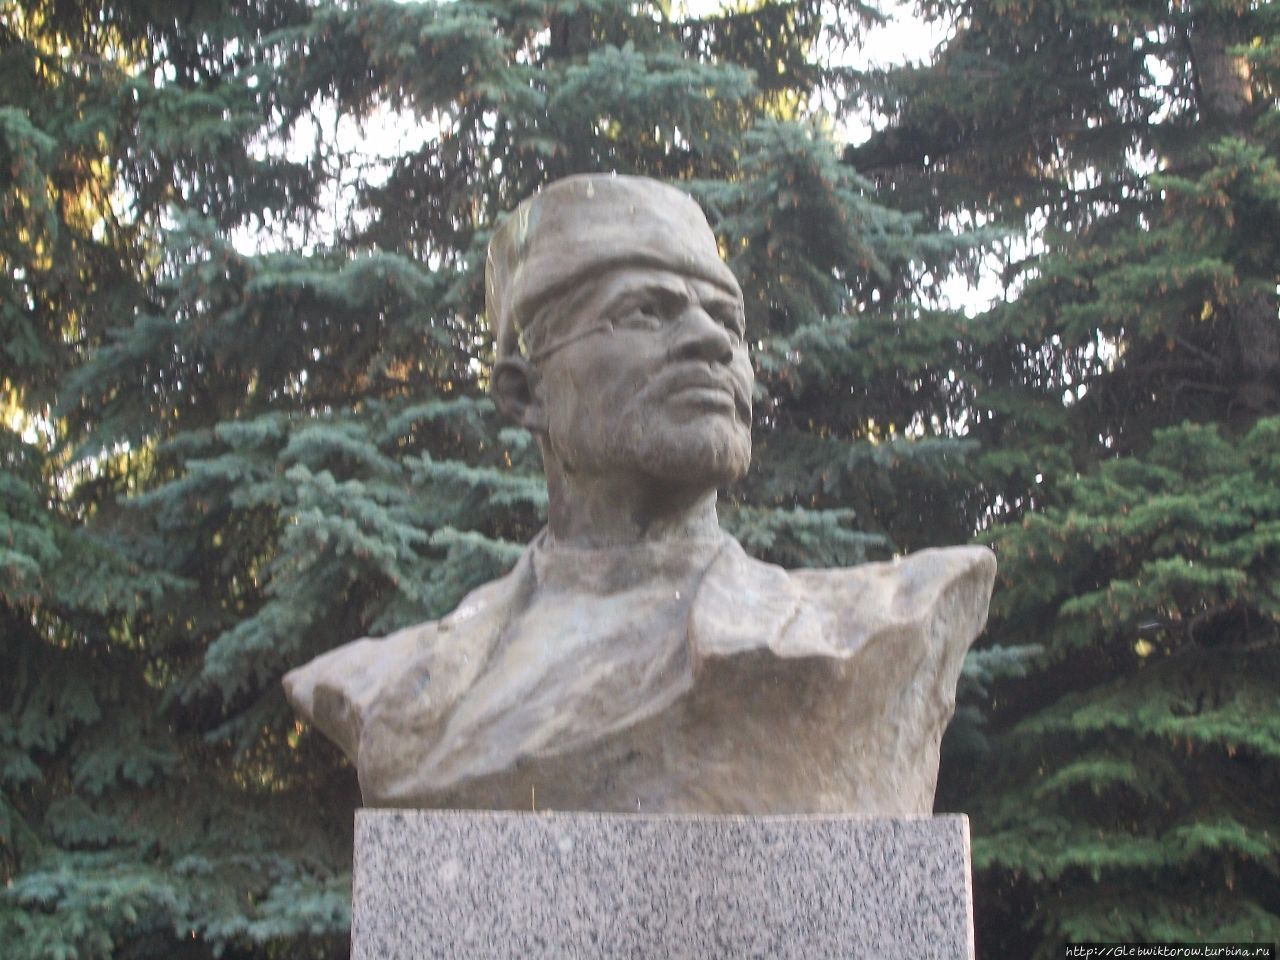 Парк культуры и отдыха имени Ивана Якутова / Park of culture and rest named after Yakutov